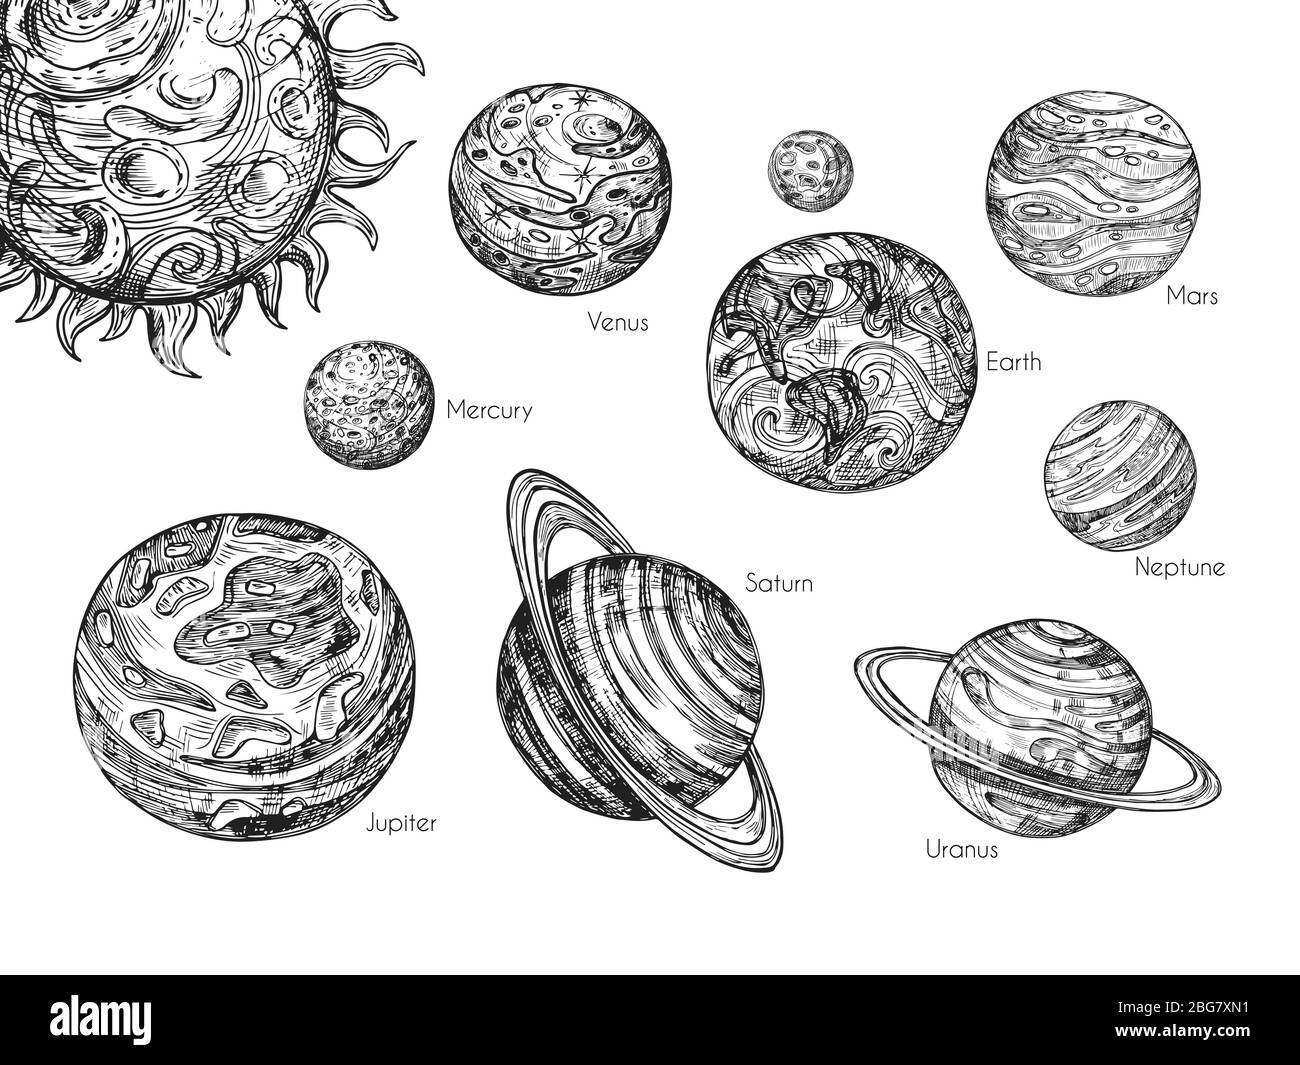 Skizzieren Sie Planeten des Sonnensystems. Merkur, venus, Erde, mars, jupiter, saturn, uranus und neptun in handgezeichneter Gravur Vektorset. Planeten Sammlung abstrakte Illustrationen Stock Vektor